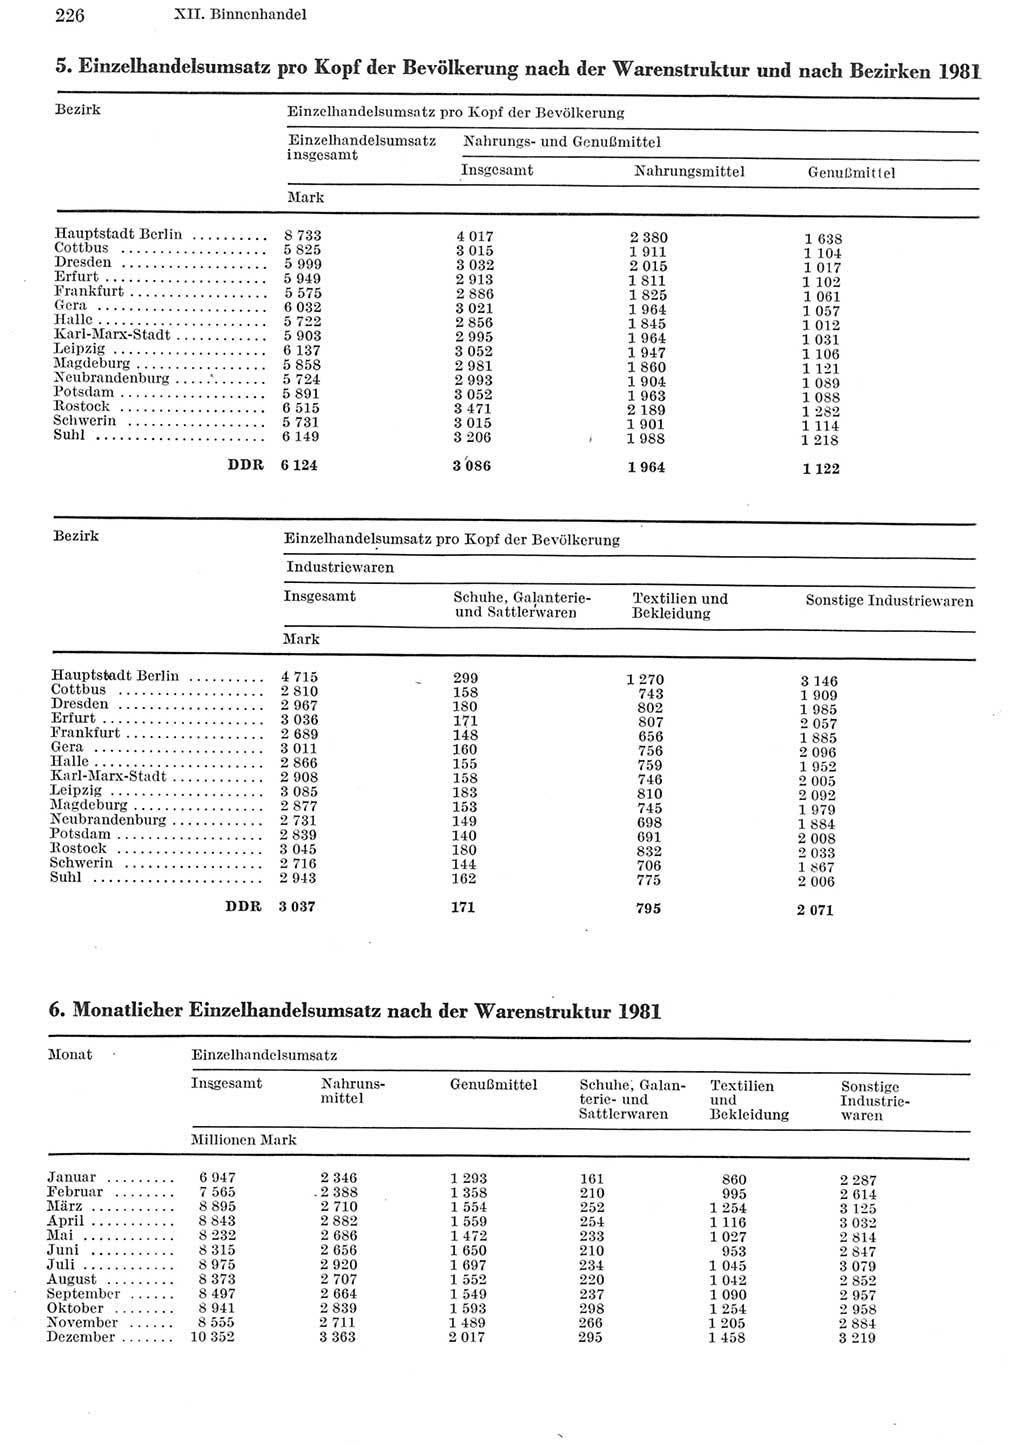 Statistisches Jahrbuch der Deutschen Demokratischen Republik (DDR) 1982, Seite 226 (Stat. Jb. DDR 1982, S. 226)